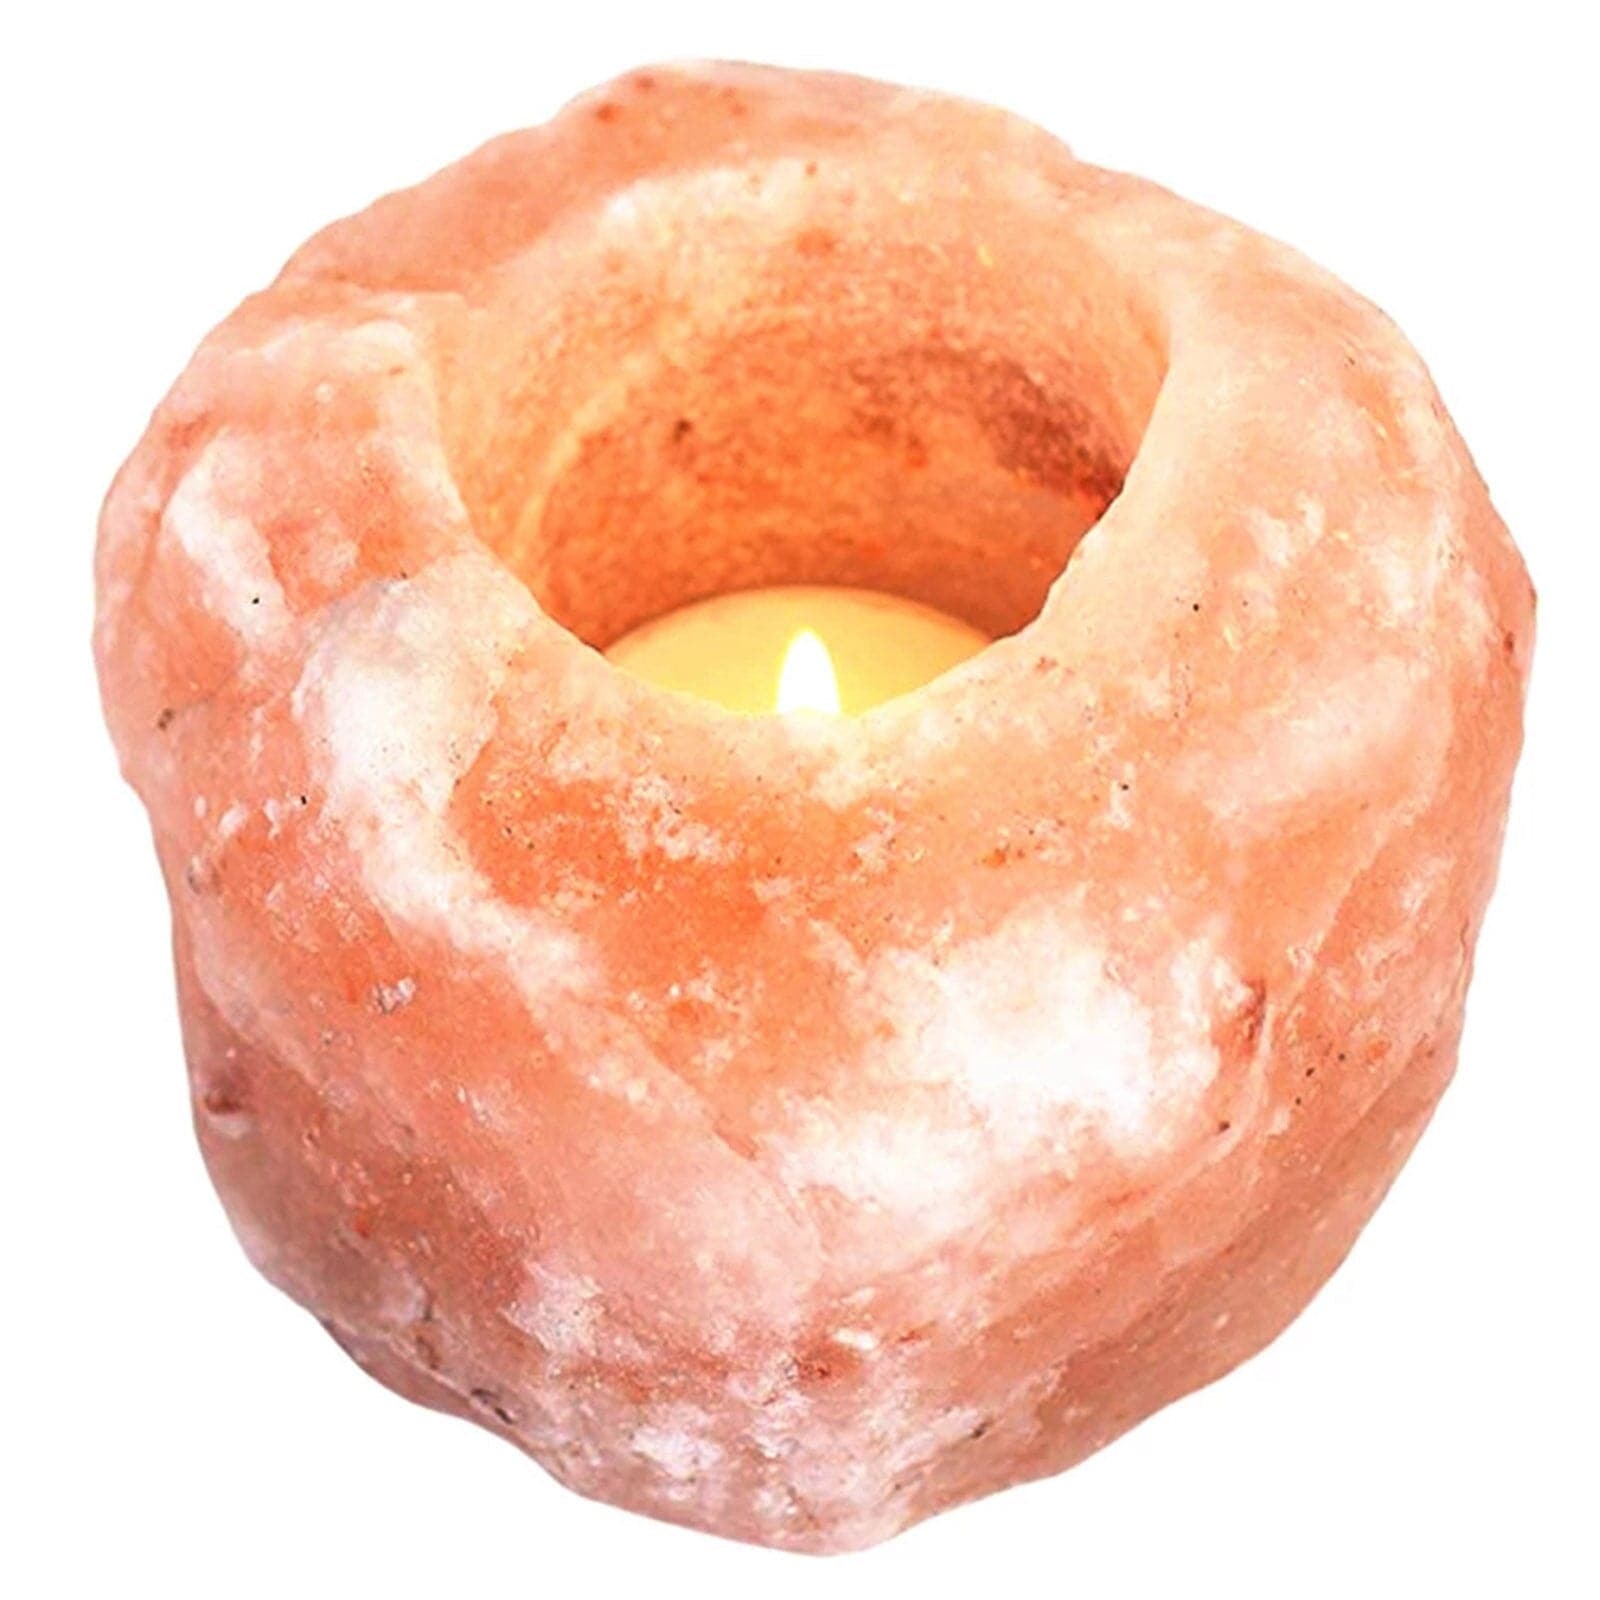 himalayan pink salt candle benefits - PapaLiving